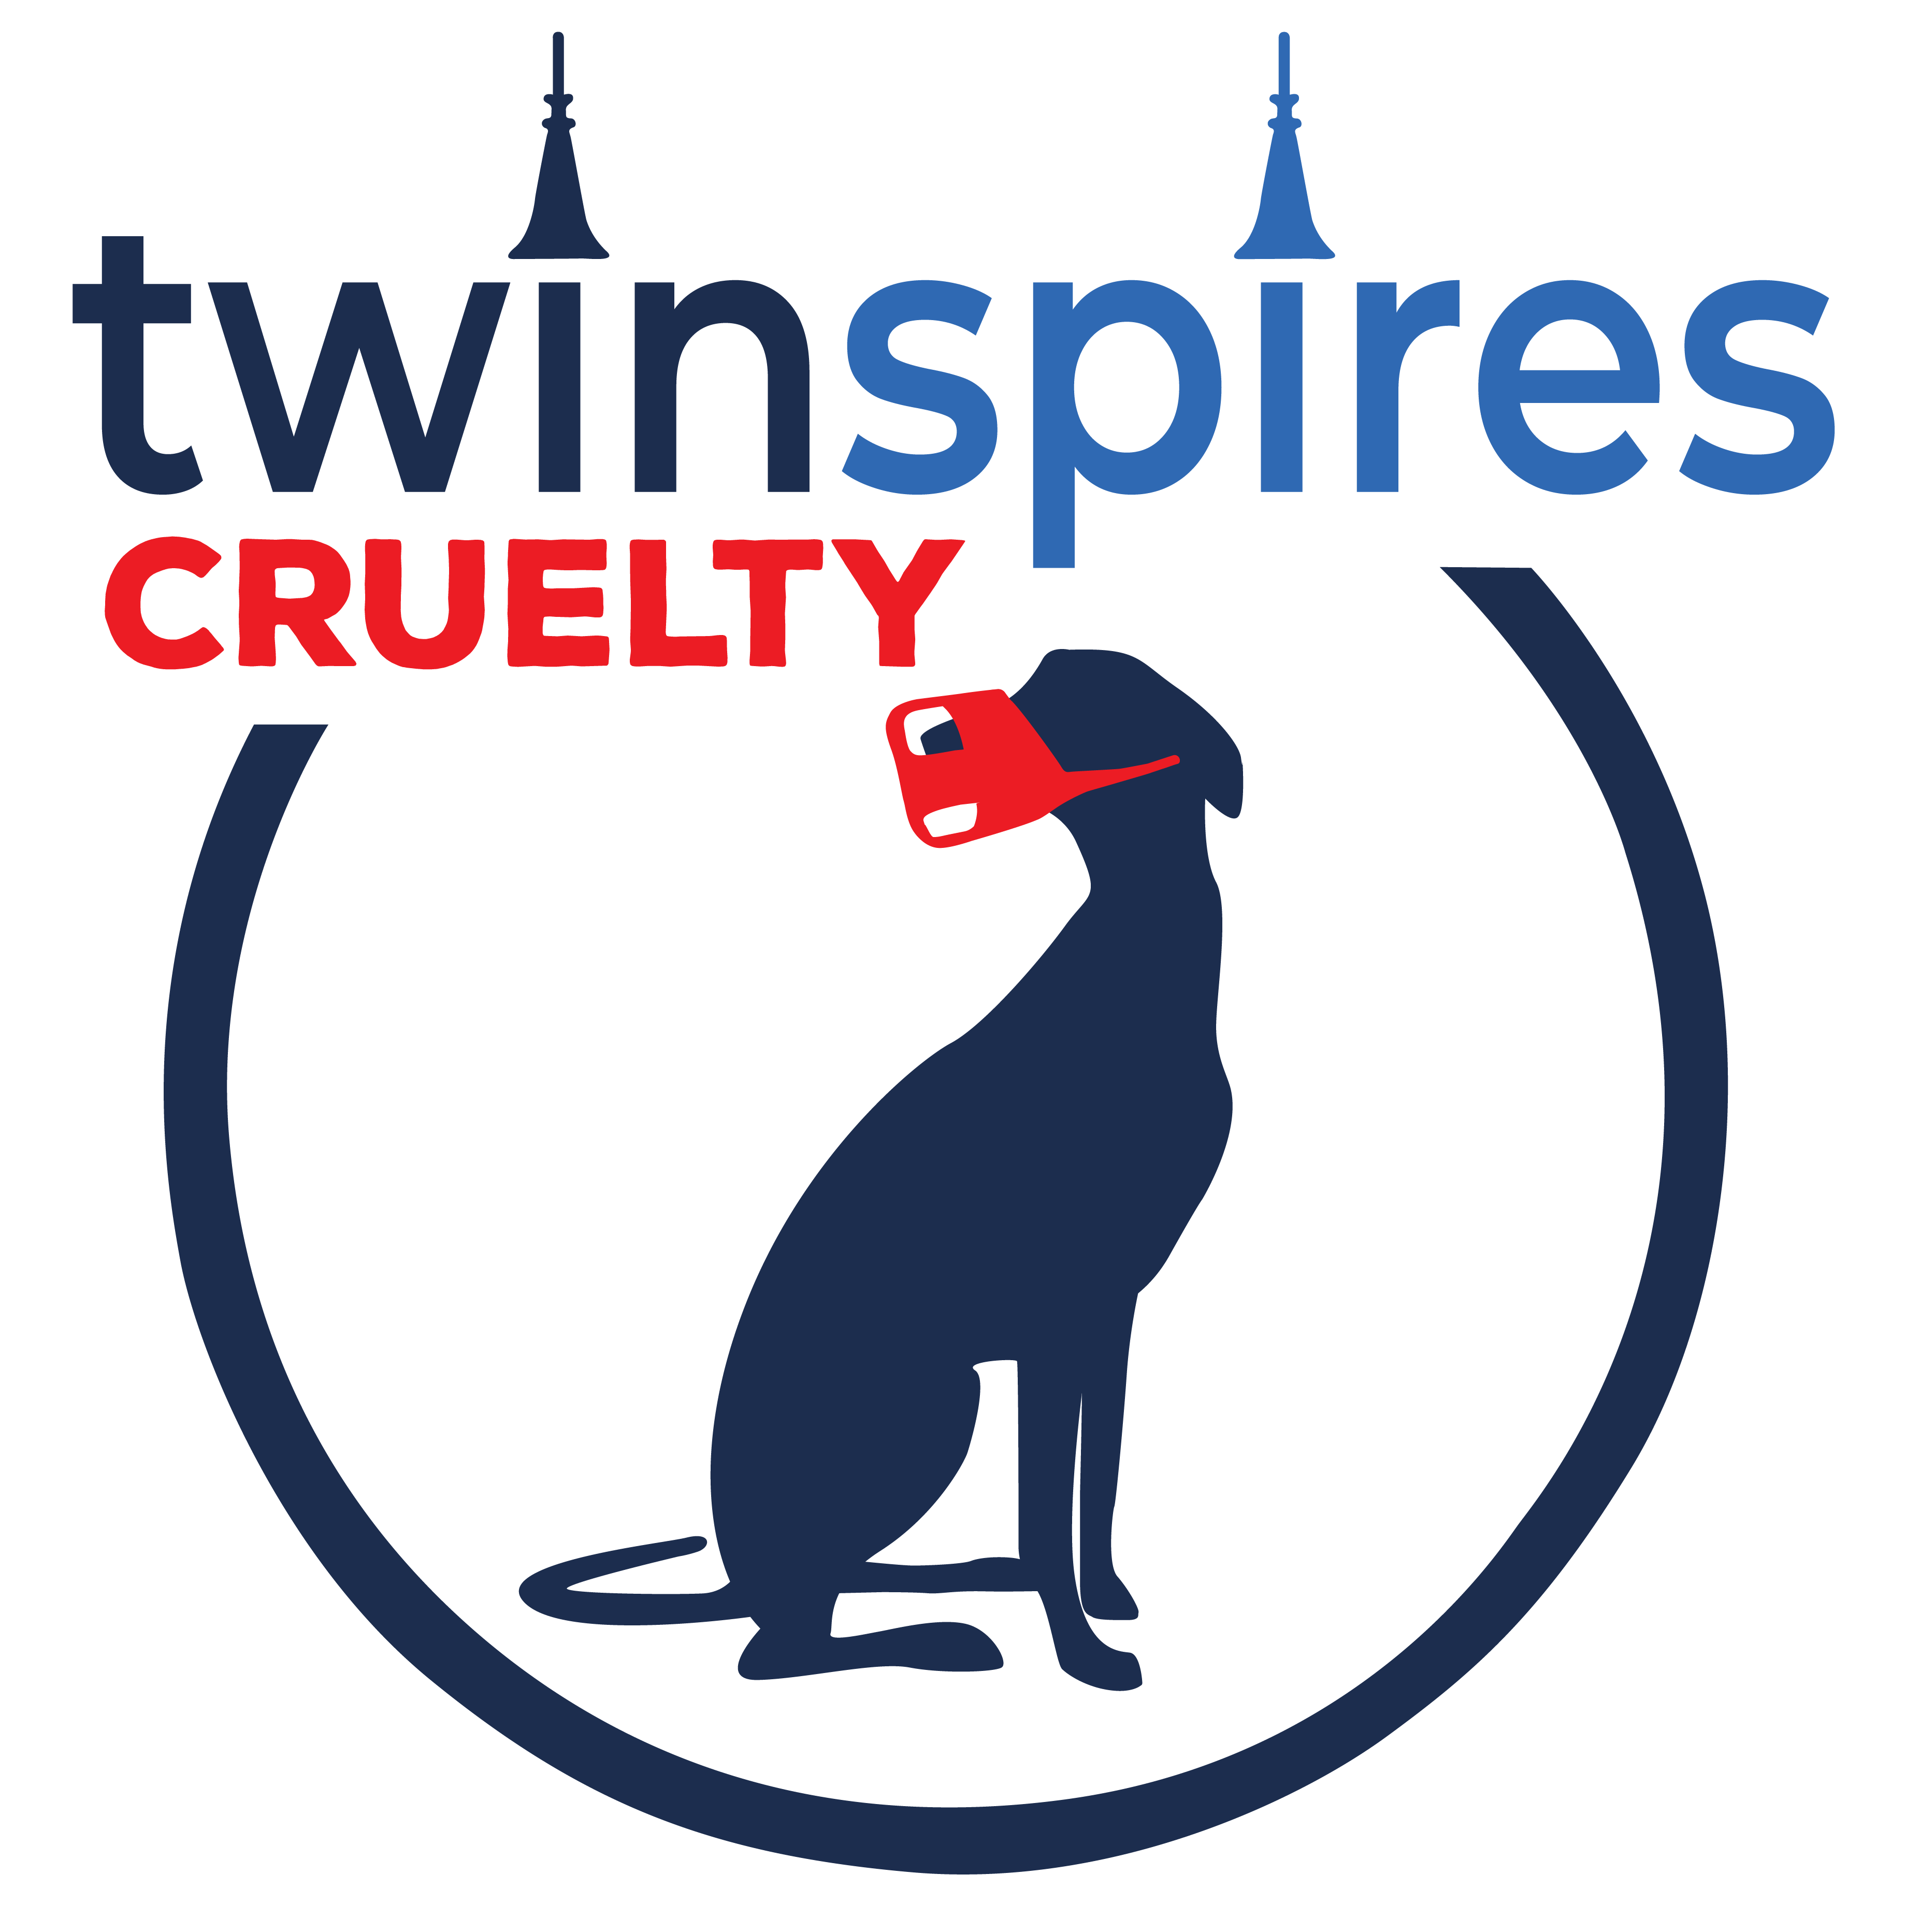 Twinspires Cruelty